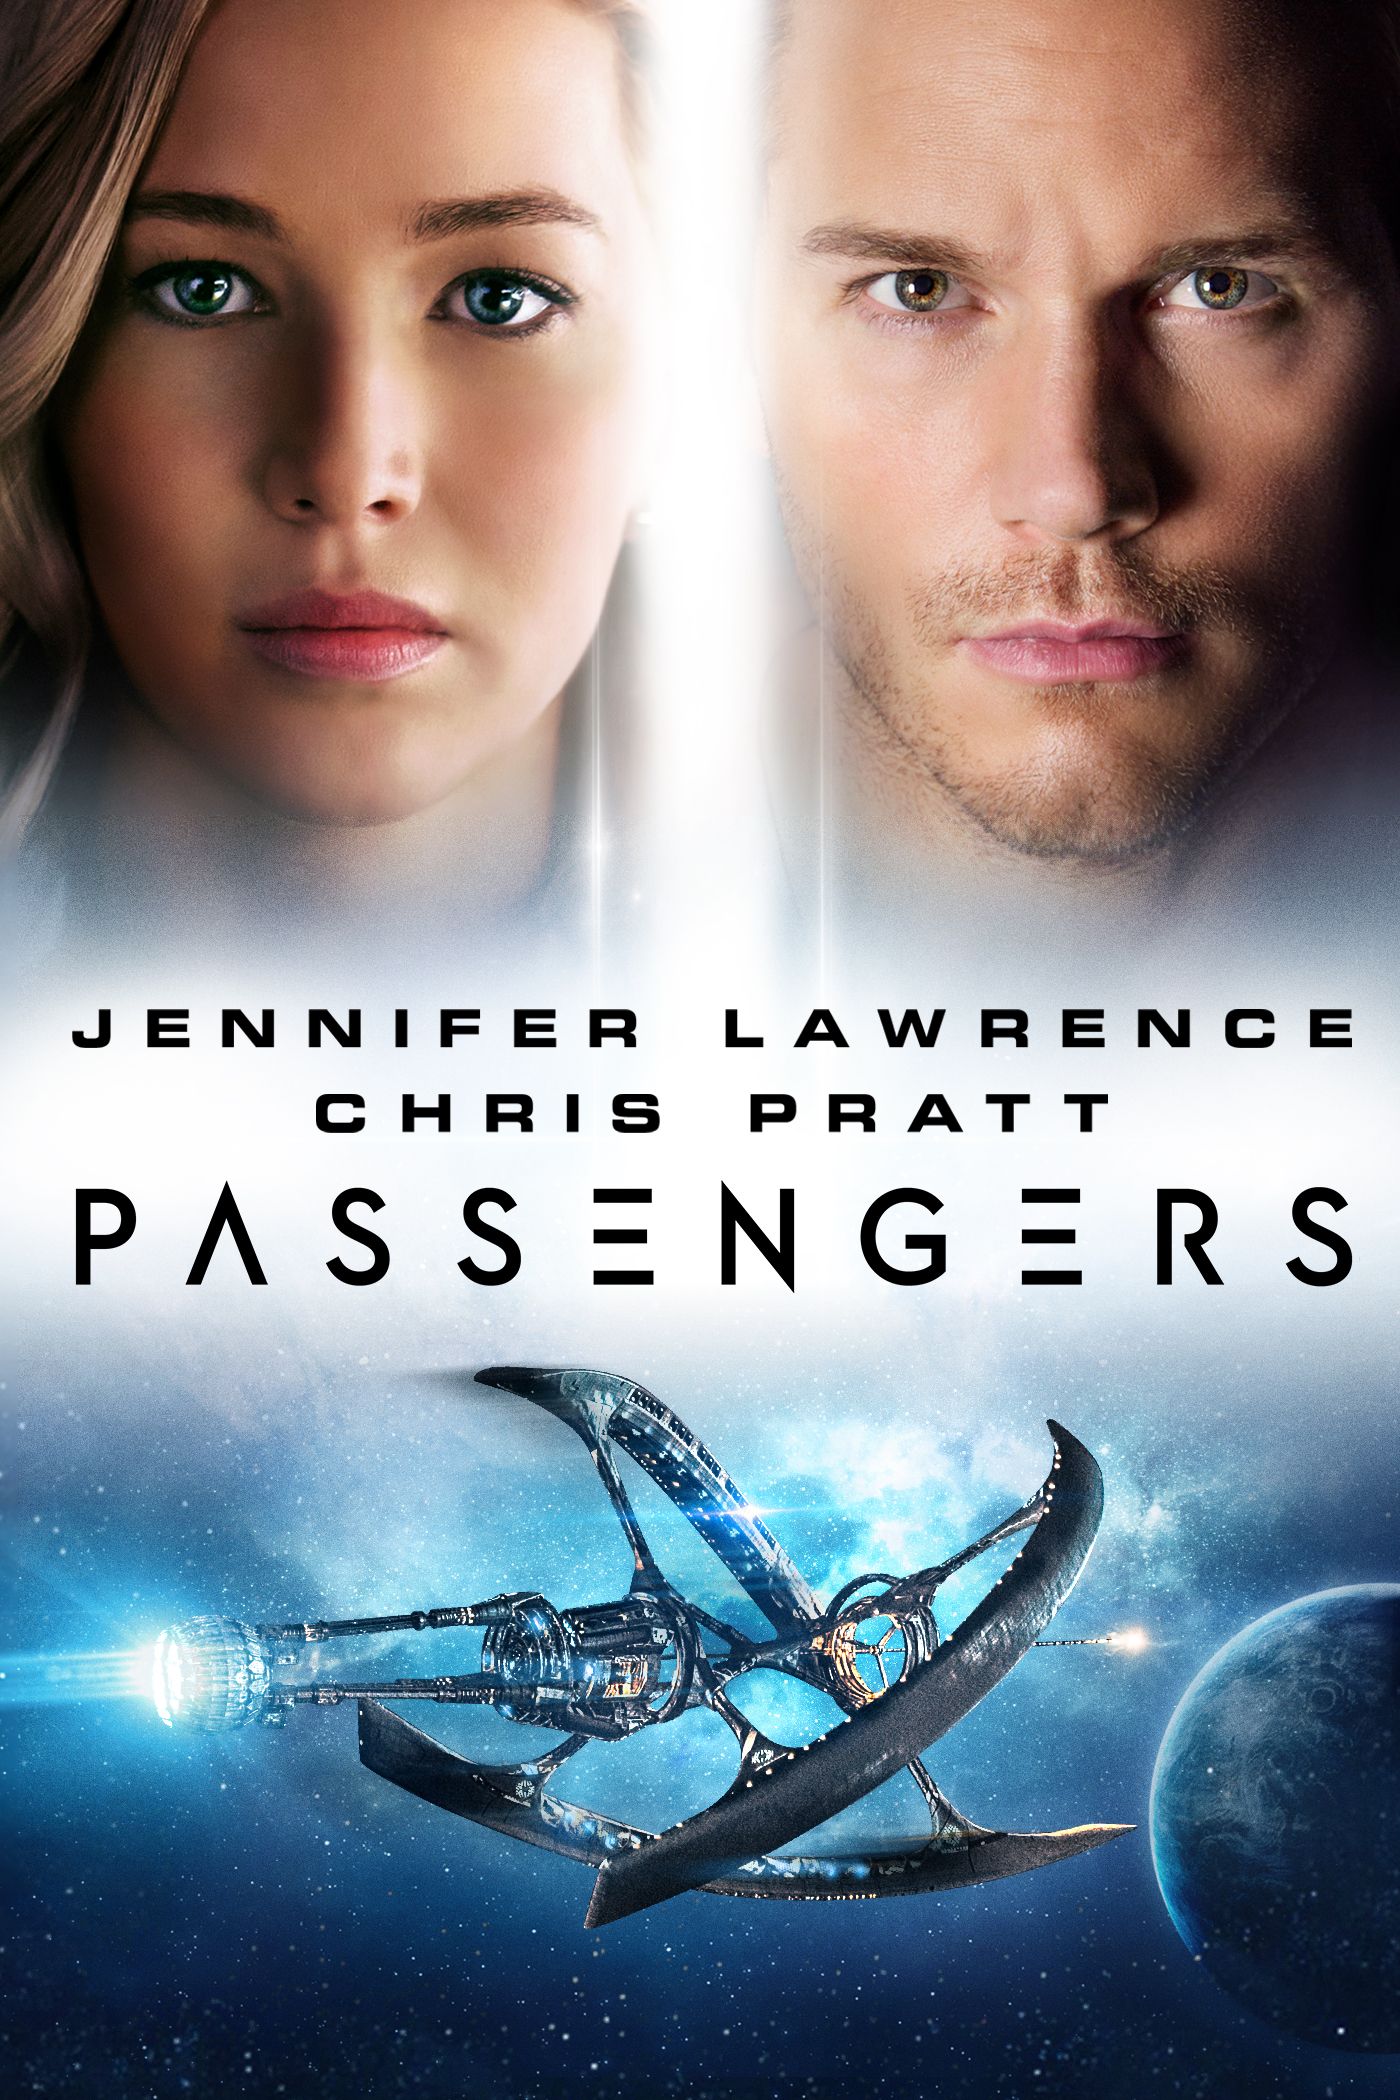 the passengers 2016 full movie